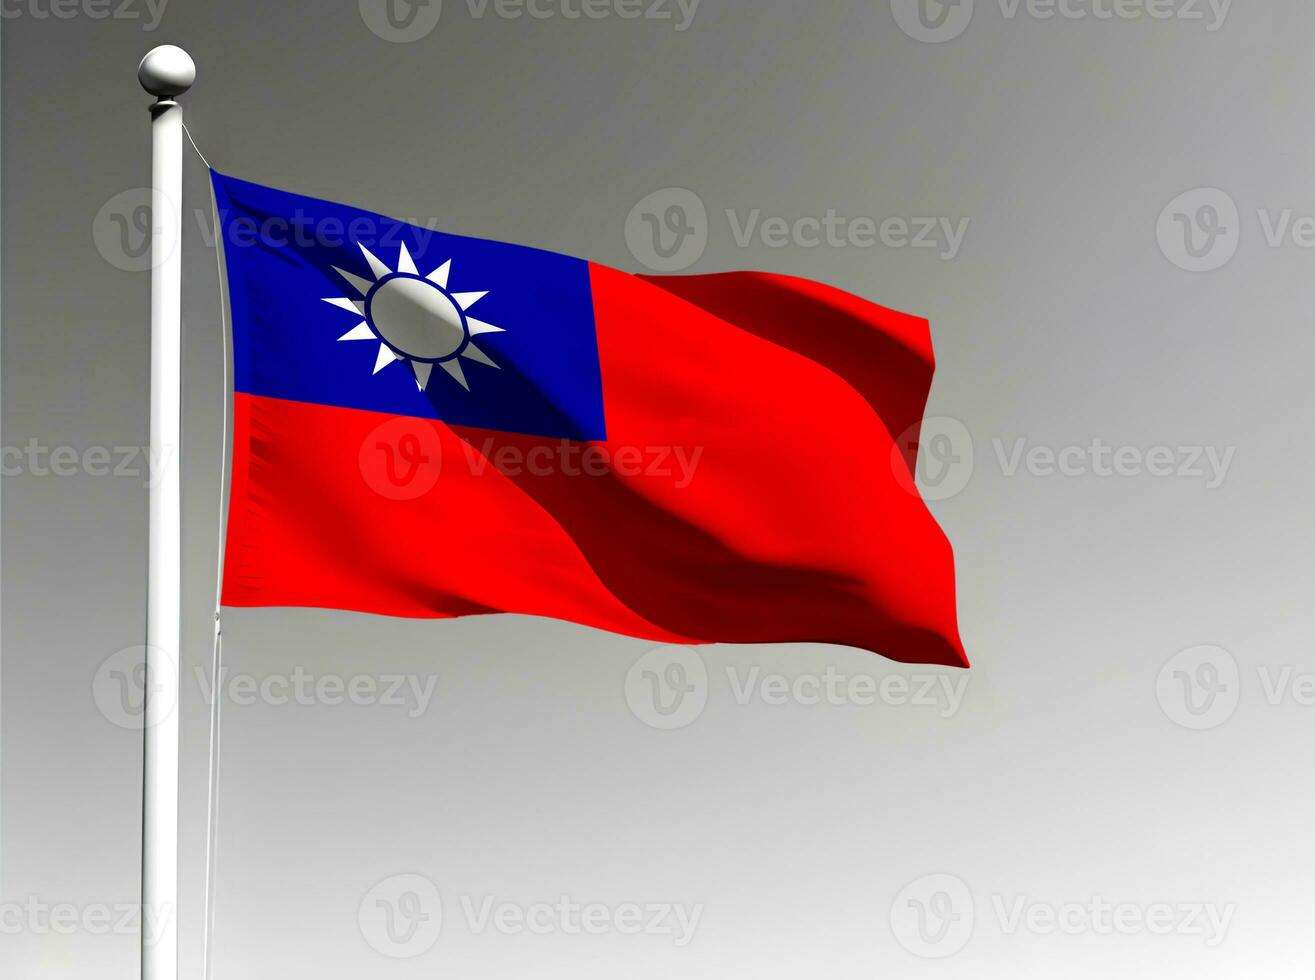 taiwan nationell flagga vinka på grå bakgrund foto